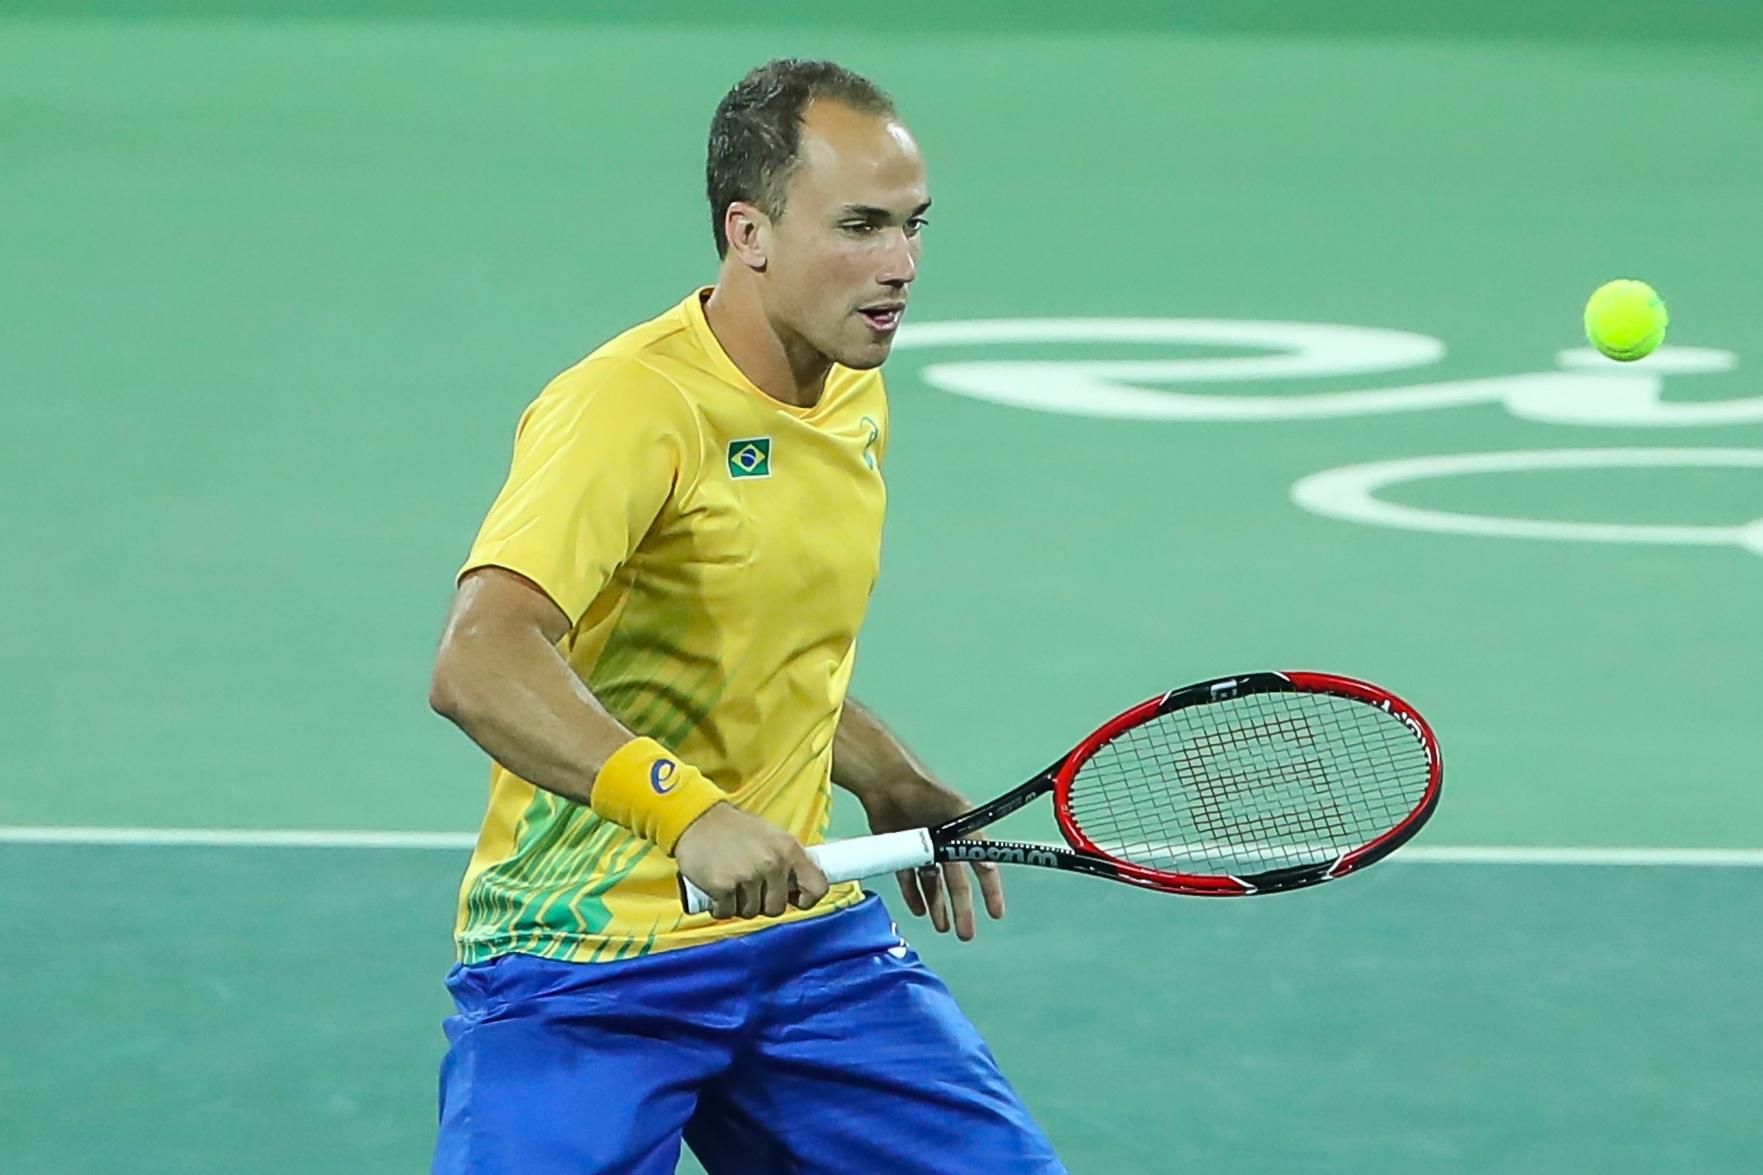 Tenista goiano é vice-campeão de tradicional torneio na Bahia